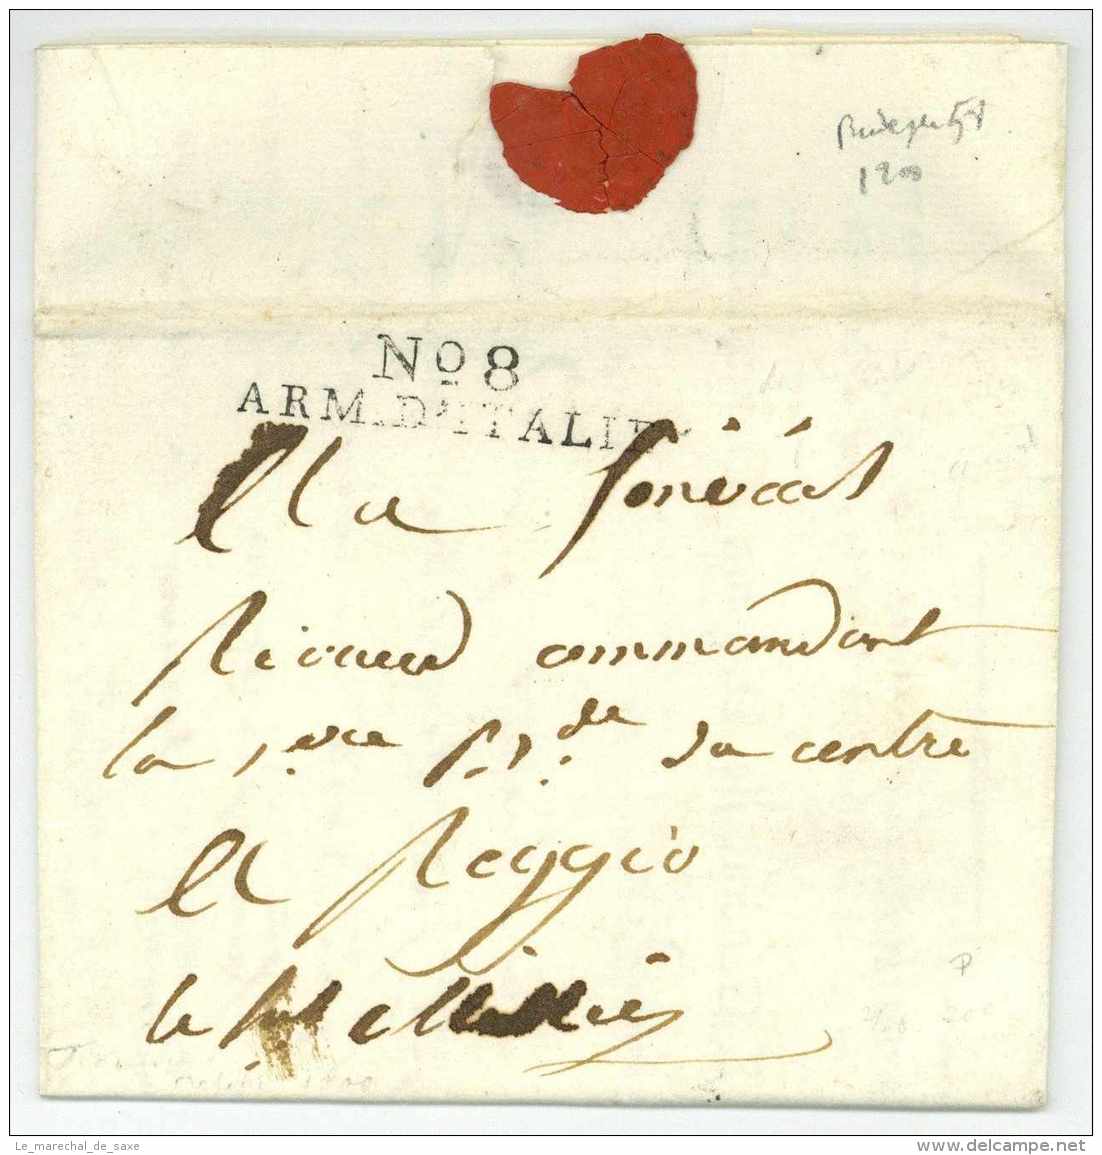 No 8 ARM. D'ITALIE - Sextius MIOLLIS (1759-1828) Général - Florence Firenze Pour Reggio 1800 - Armeestempel (vor 1900)